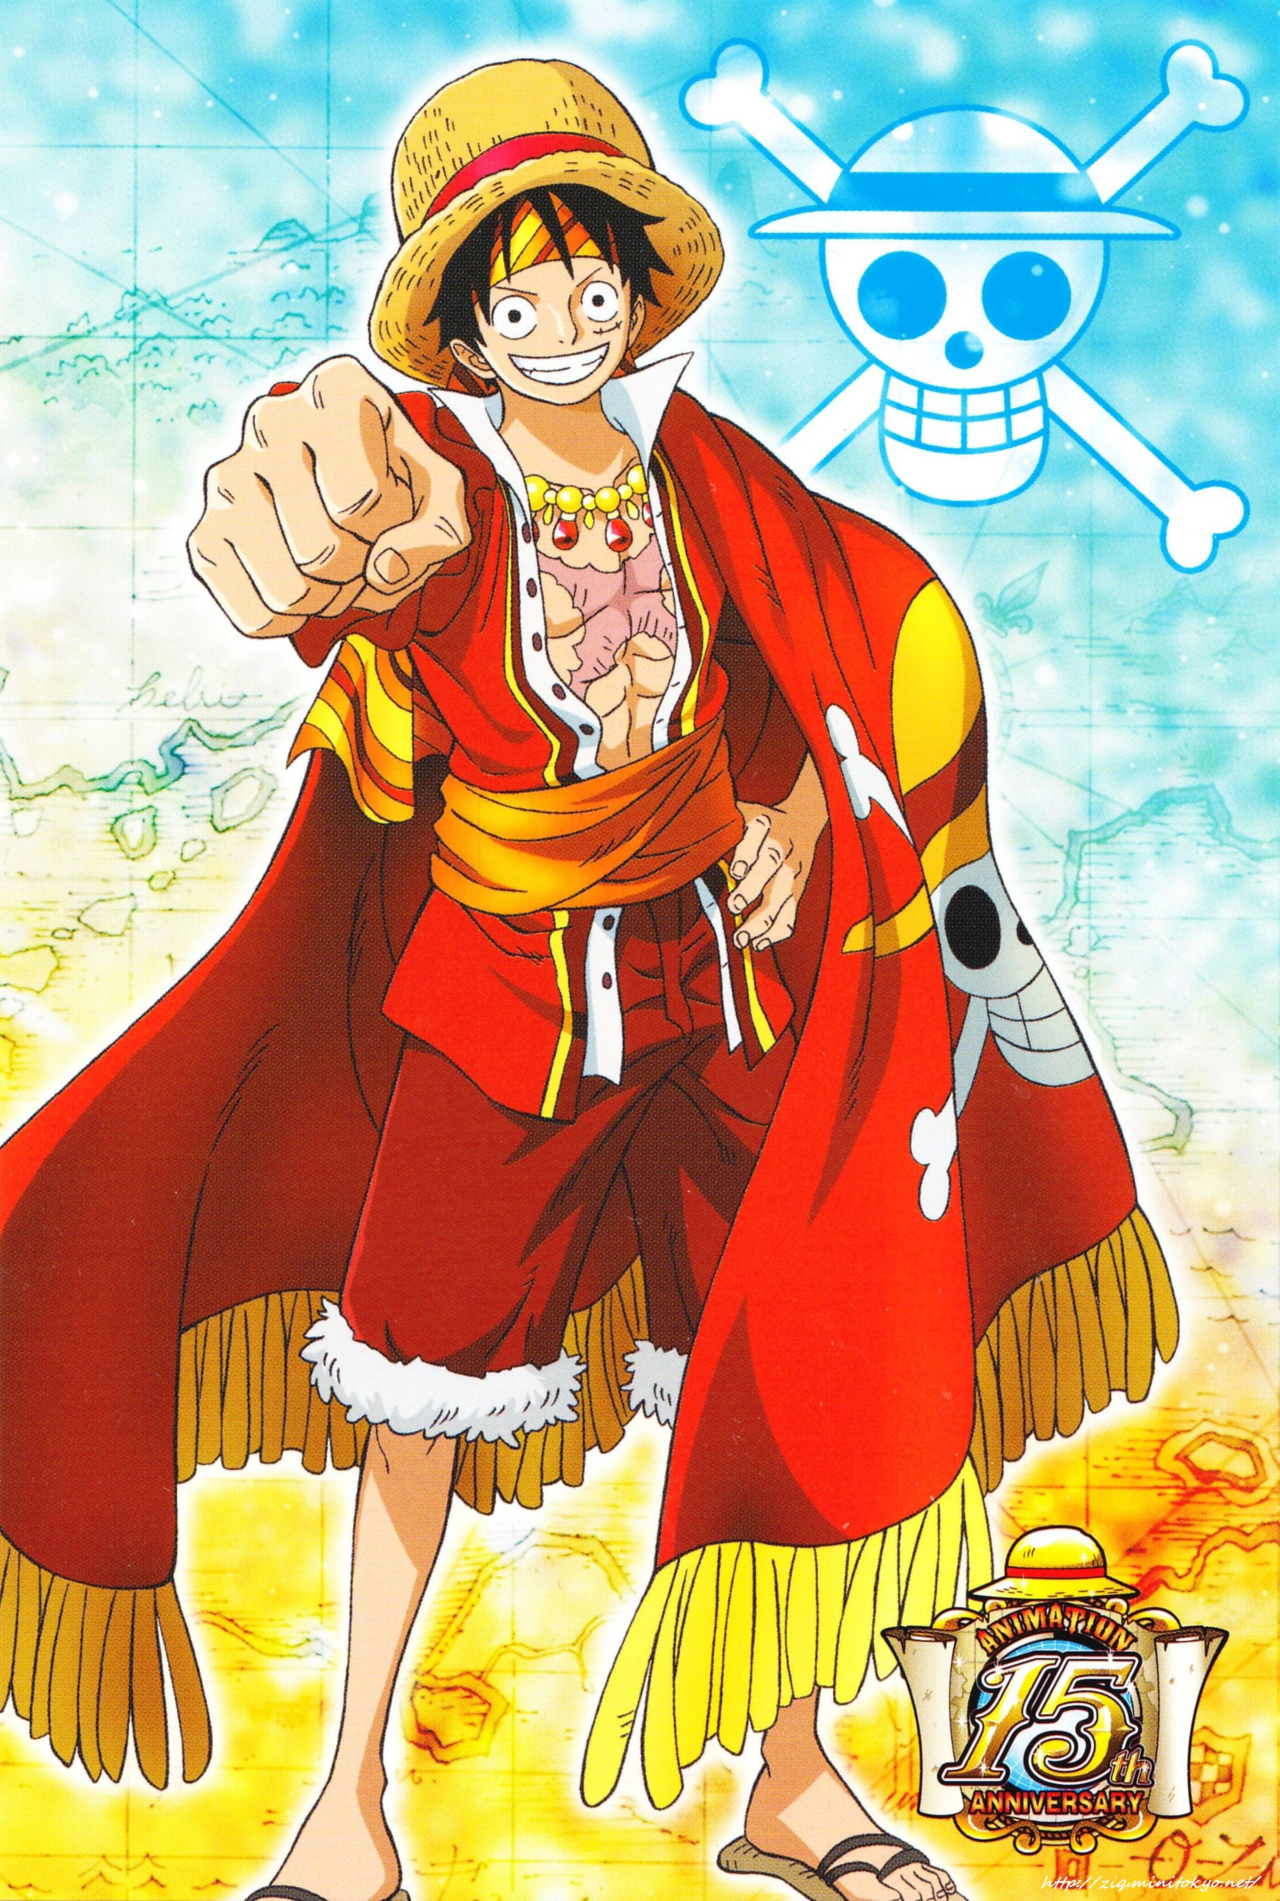 Fan One Piece Luffy: Nếu bạn là một fan cuồng nhiệt của bộ truyện One Piece, chắc chắn không thể bỏ qua hình ảnh về Luffy - anh chàng hải tặc ăn nắm trái tim của rất nhiều fan trên toàn thế giới. Cùng nhau chiêm ngưỡng các biểu tượng, khoảnh khắc ấn tượng của nhân vật này qua ống kính nghệ thuật.